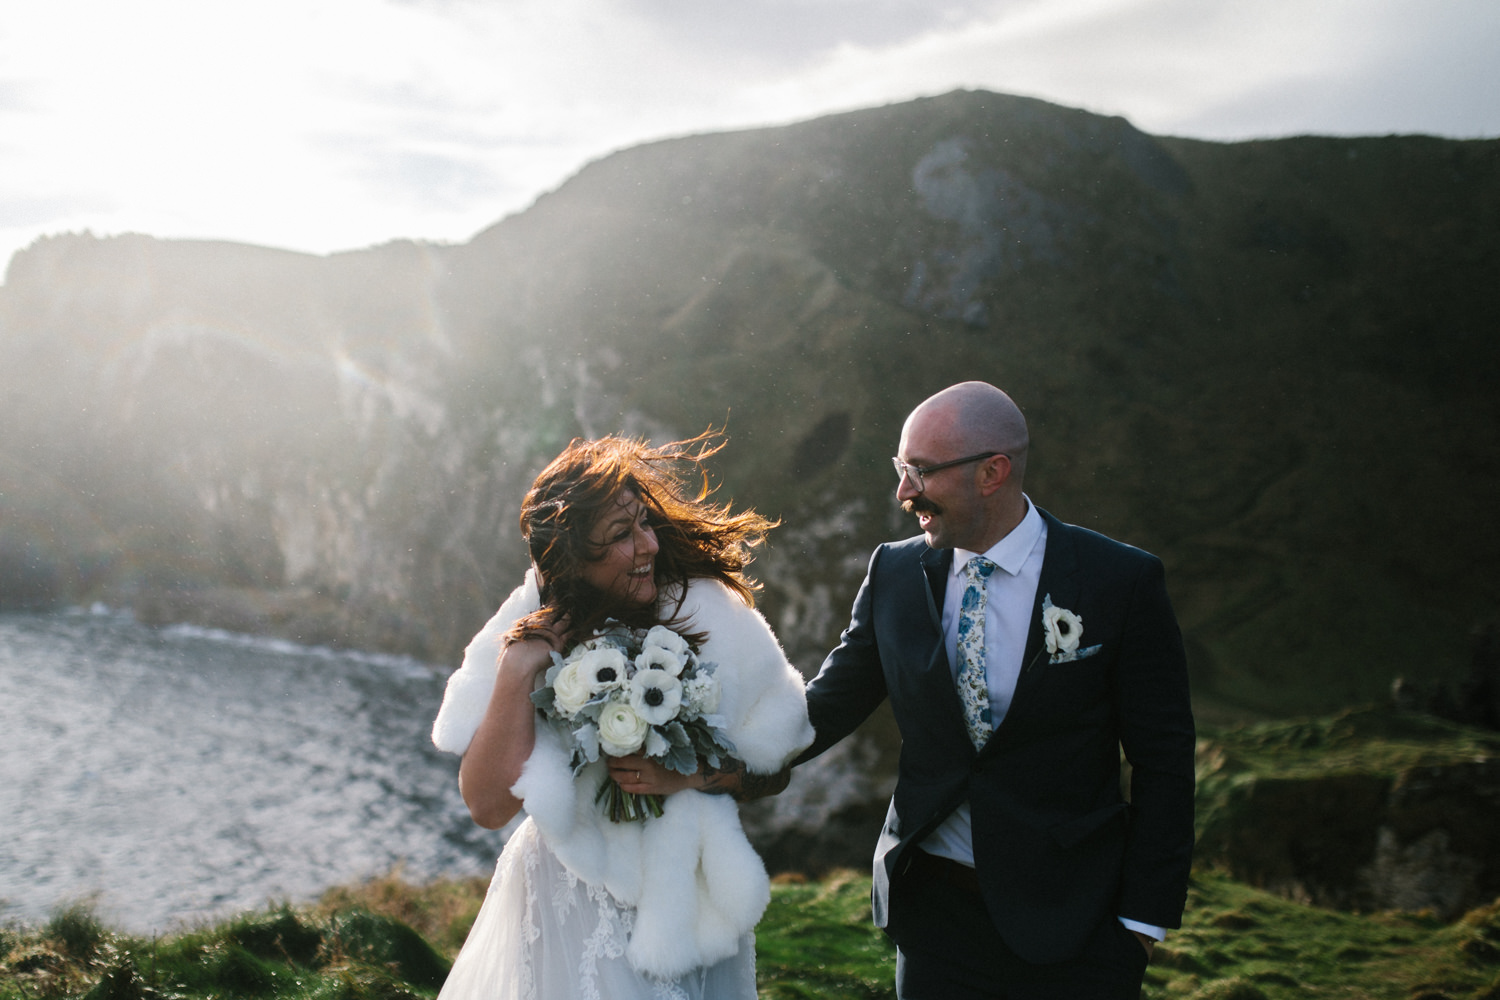 north-coast-elopement-CS-4 North Coast of Ireland Elopement // Colin and Sarah